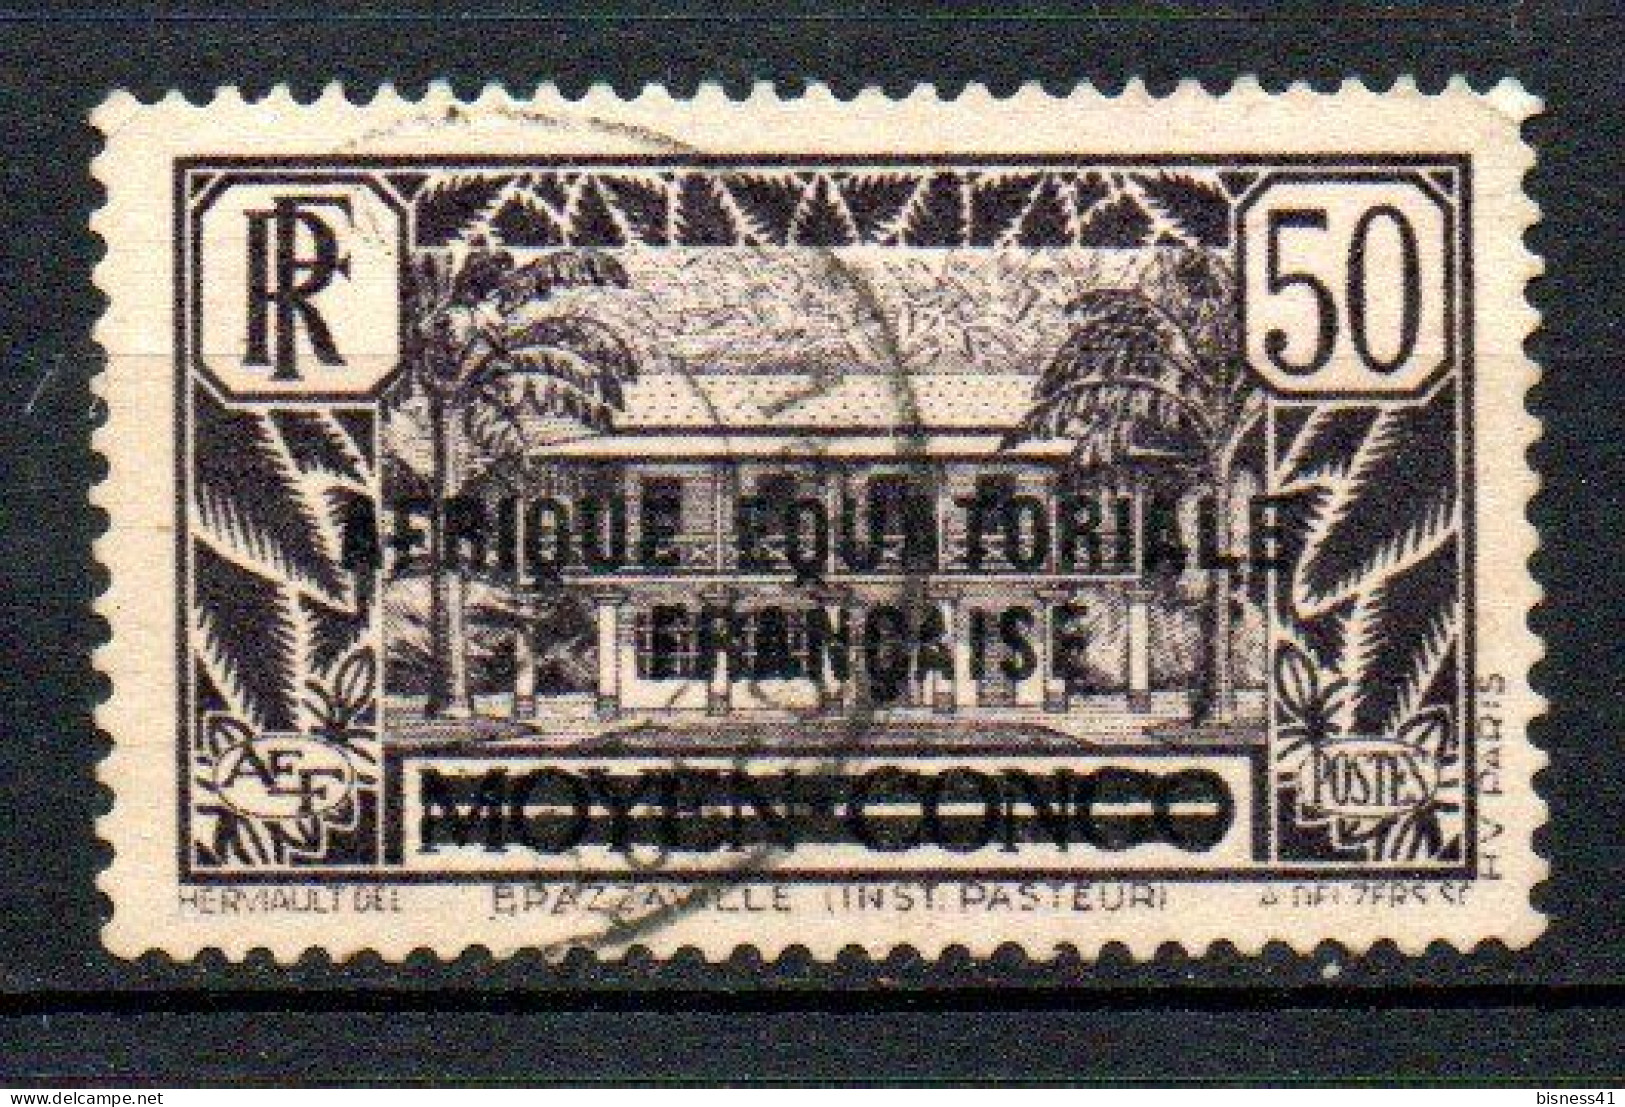 Col41 Colonies AEF Afrique équatoriale N° 10 Oblitéré Cote 3,50  € - Used Stamps